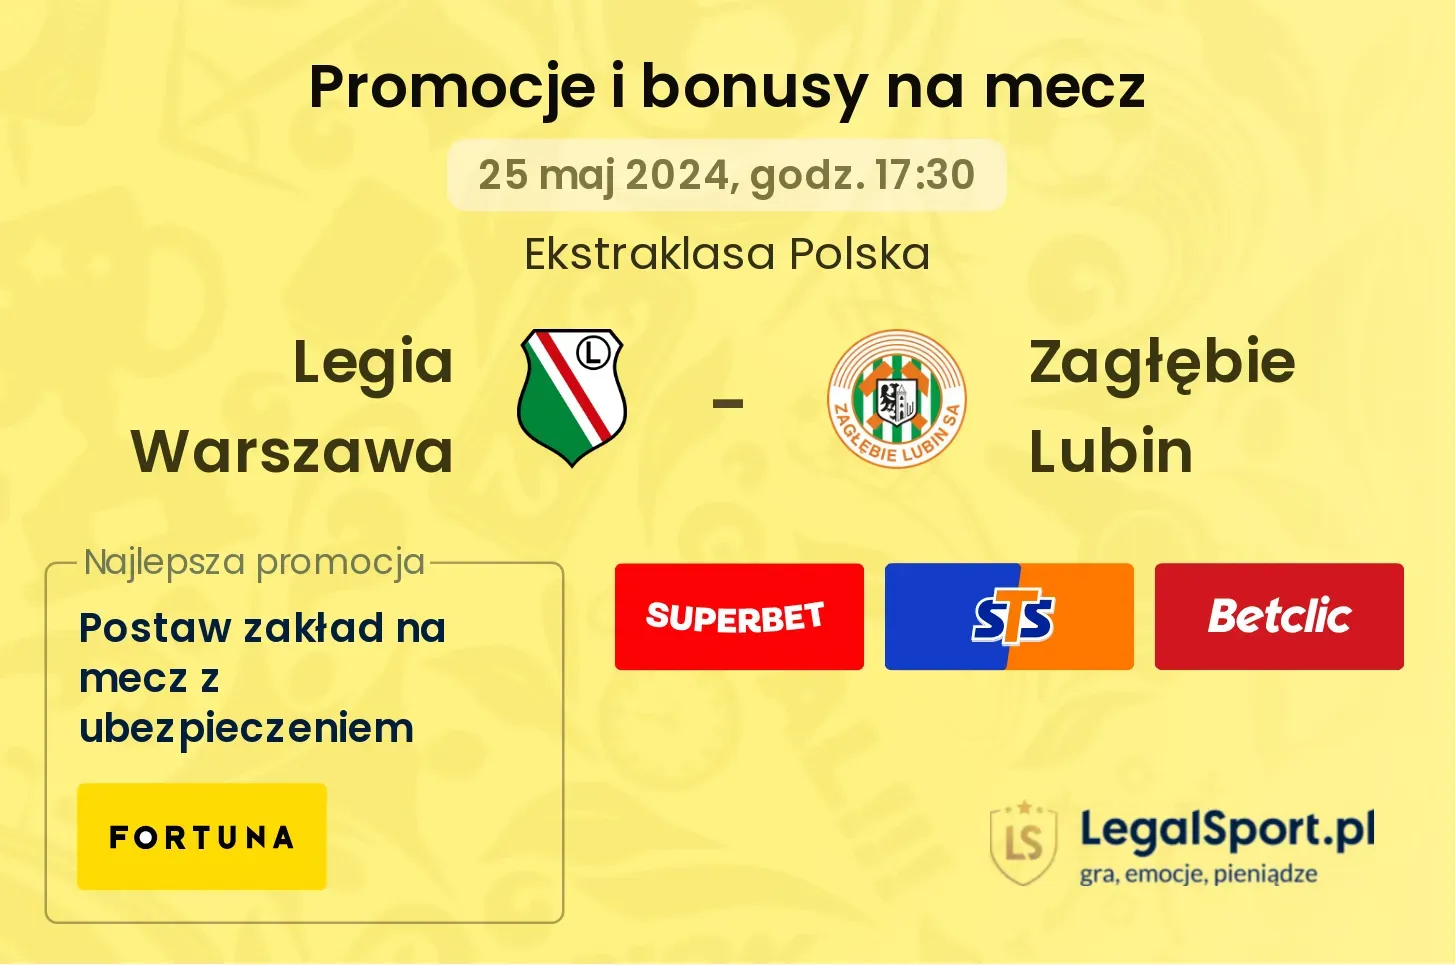 Legia Warszawa - Zagłębie Lubin bonusy i promocje (25.05, 17:30)